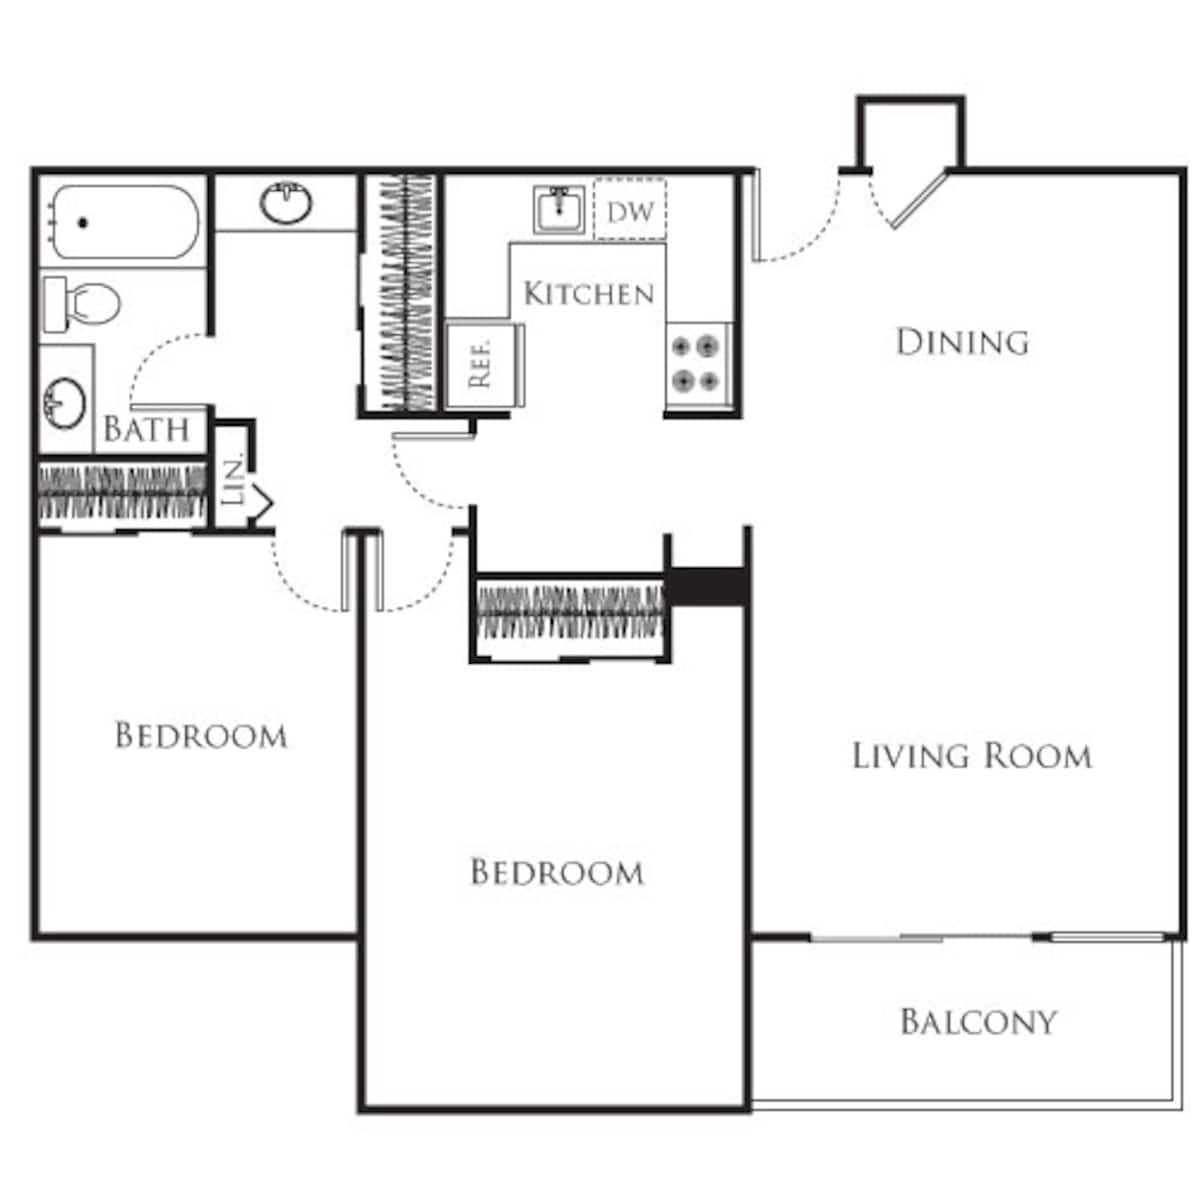 Floorplan diagram for 2 Bedroom B, showing 2 bedroom